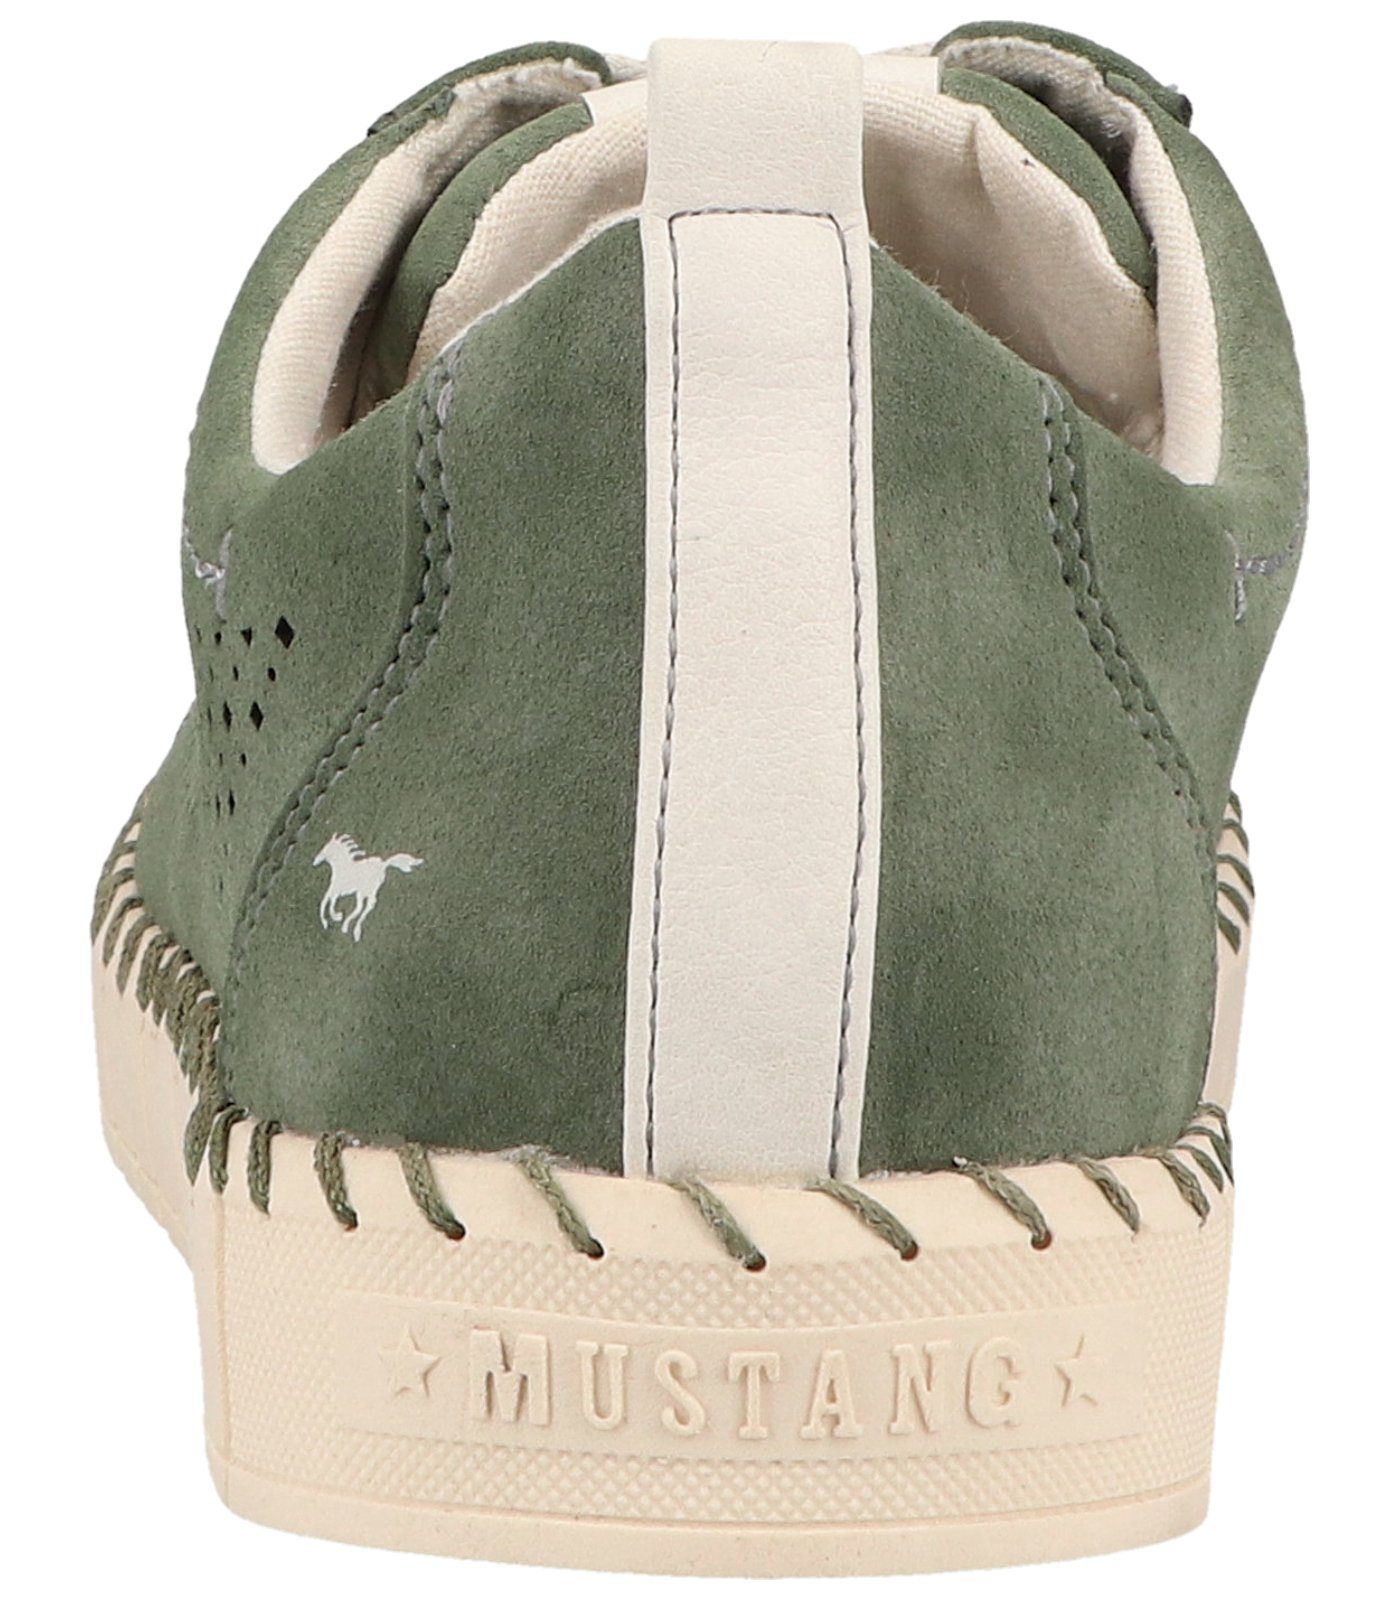 Textil Sneaker Grün MUSTANG Sneaker Shoes Mustang